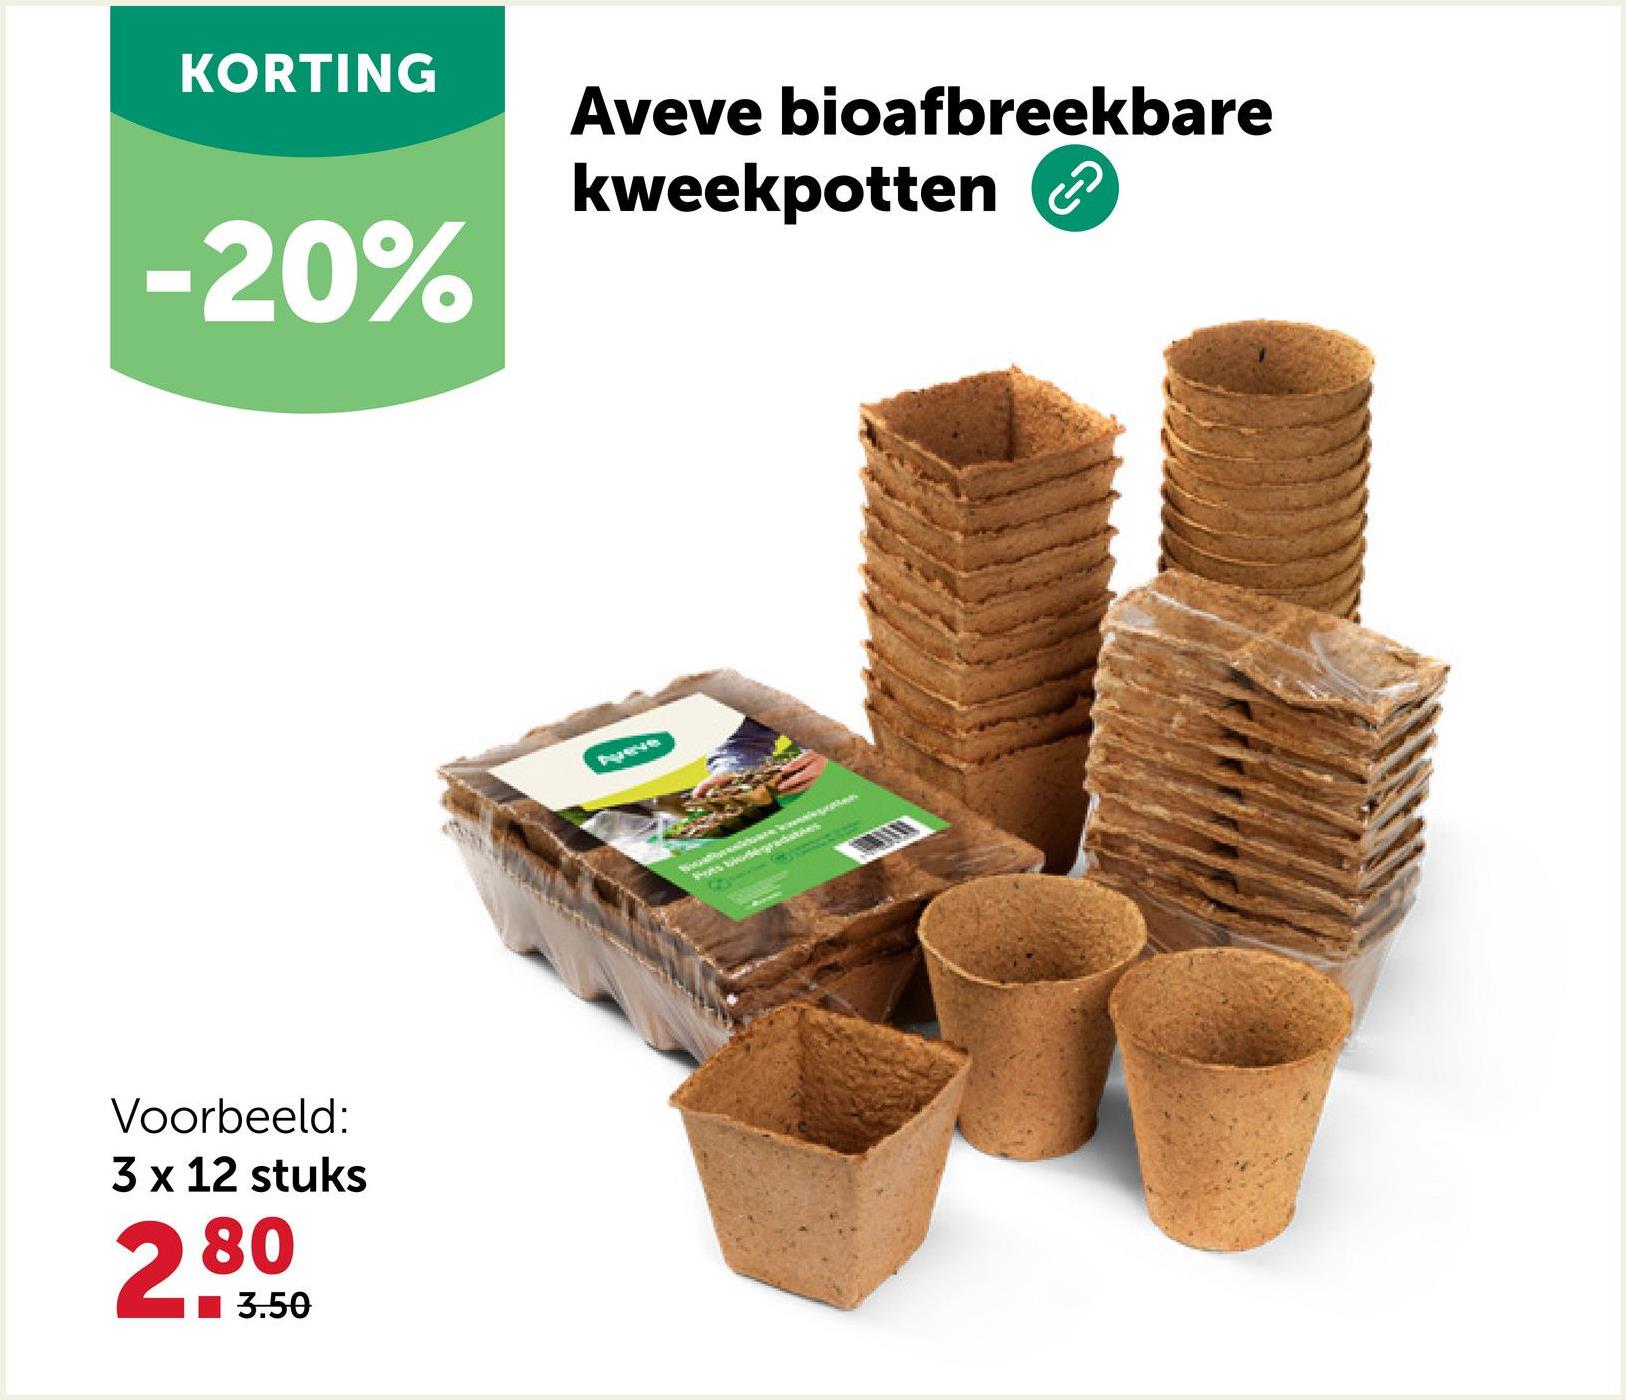 KORTING
-20%
Voorbeeld:
3 x 12 stuks
2.80
3.50
Aveve bioafbreekbare
kweekpotten